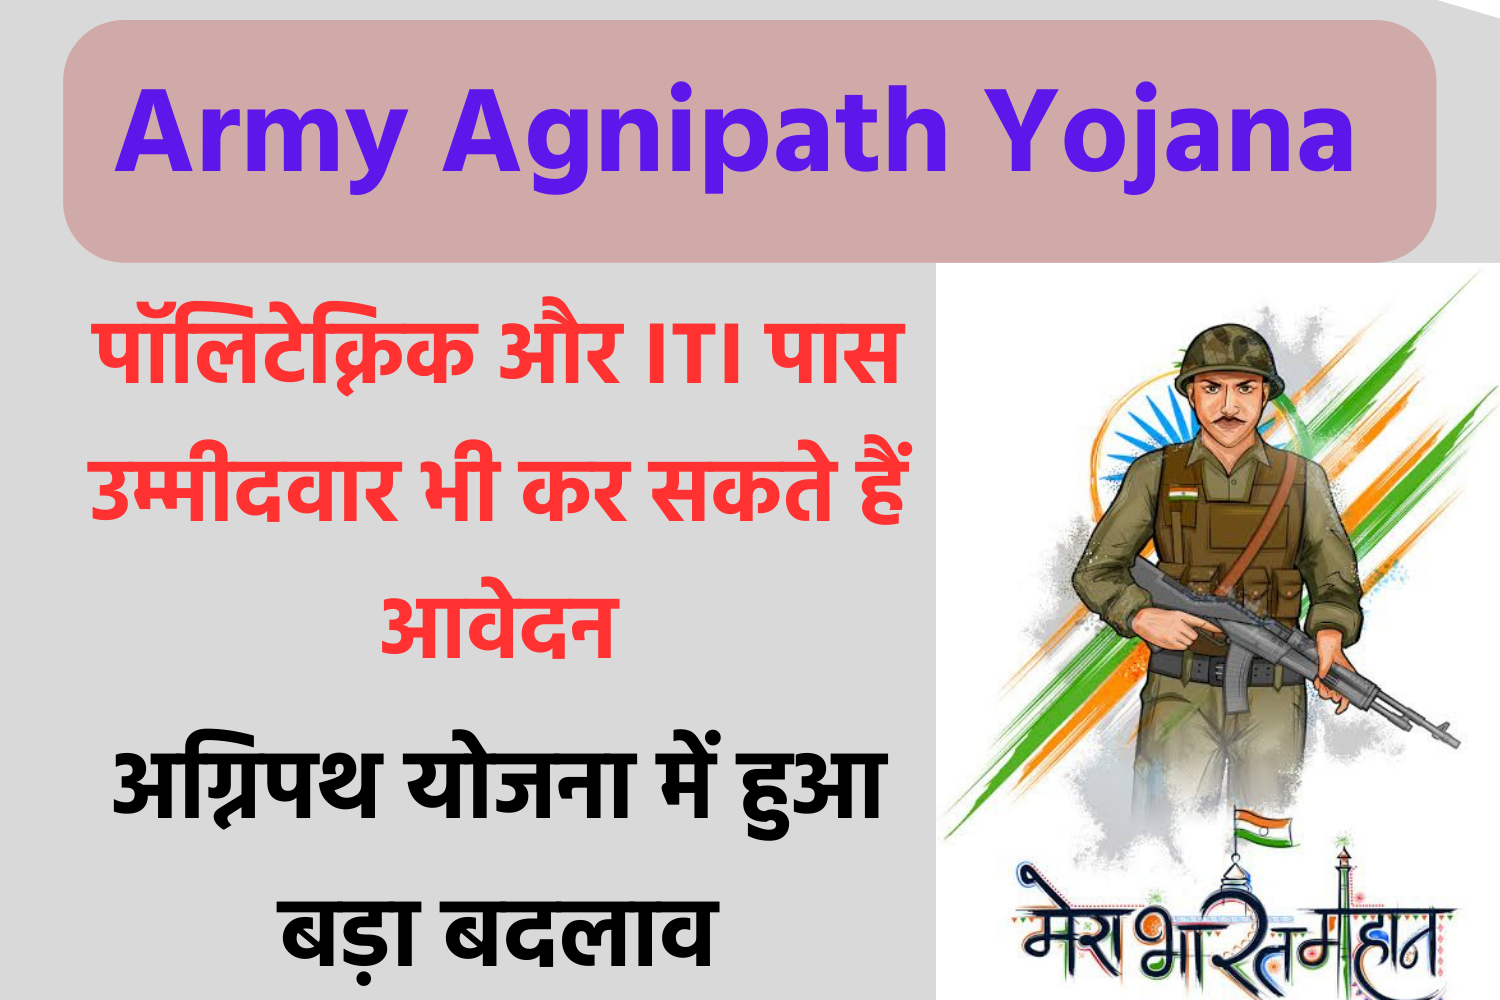 Army Agniveer Bharti Update - अग्निवीर भर्ती में हुआ बड़ा बदलाव, देखें लेटेस्ट अपडेट्स